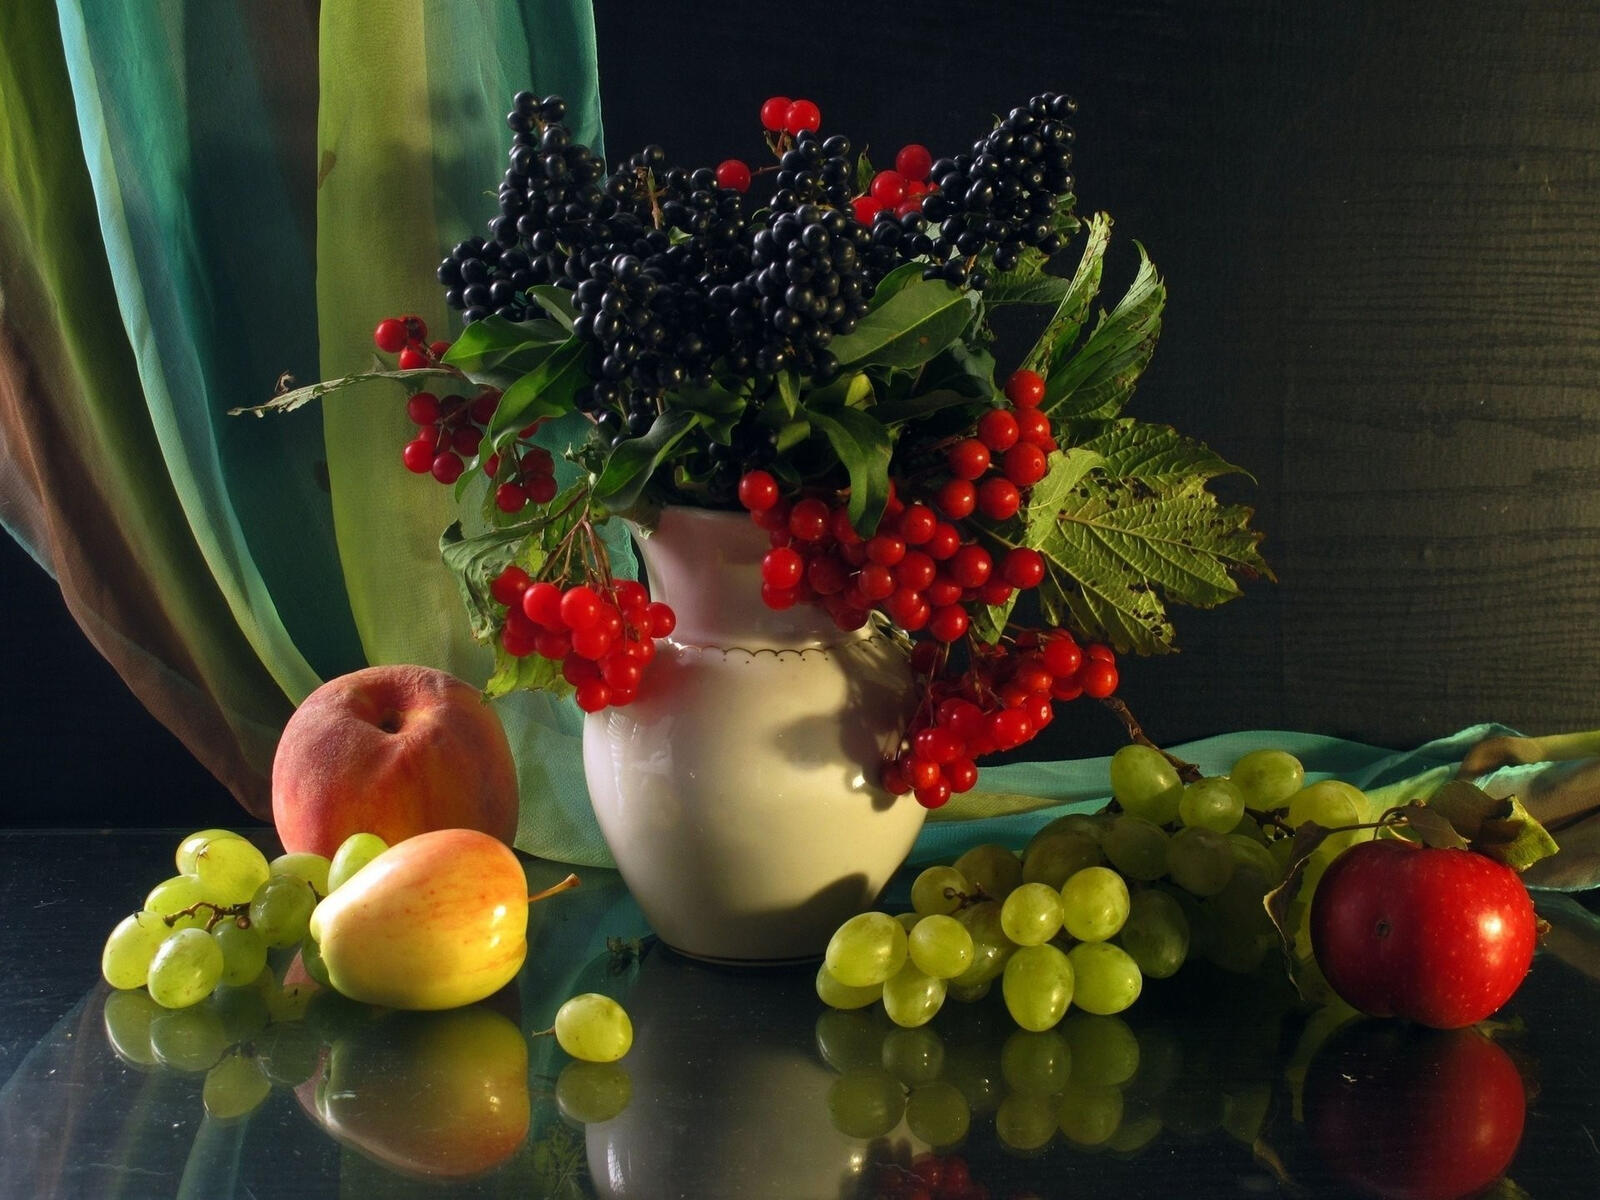 Бесплатное фото Натюрморт с изображением вазы с веточками ягод